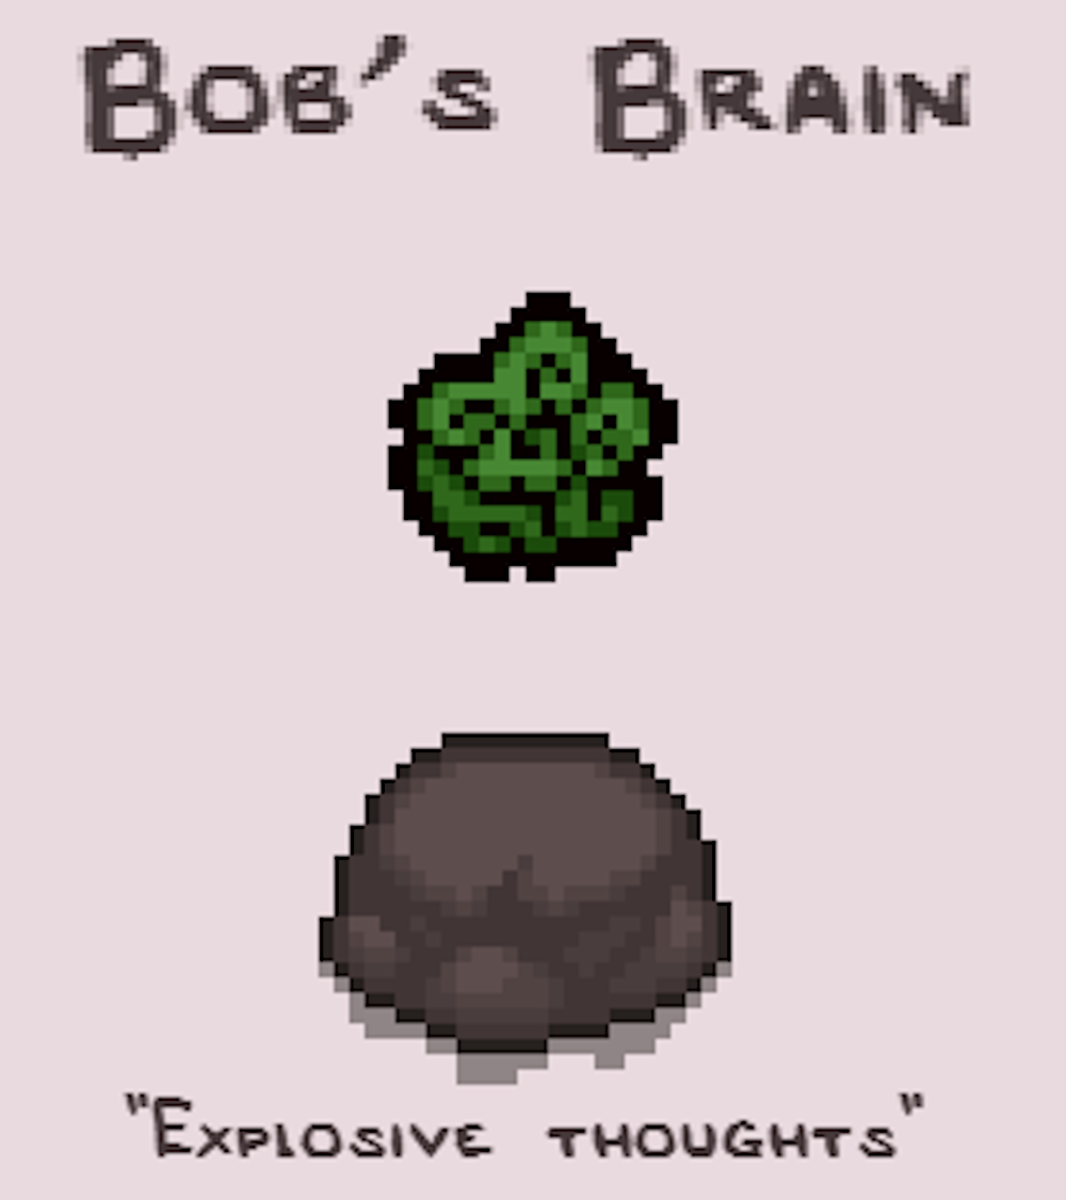 Bob's Brain